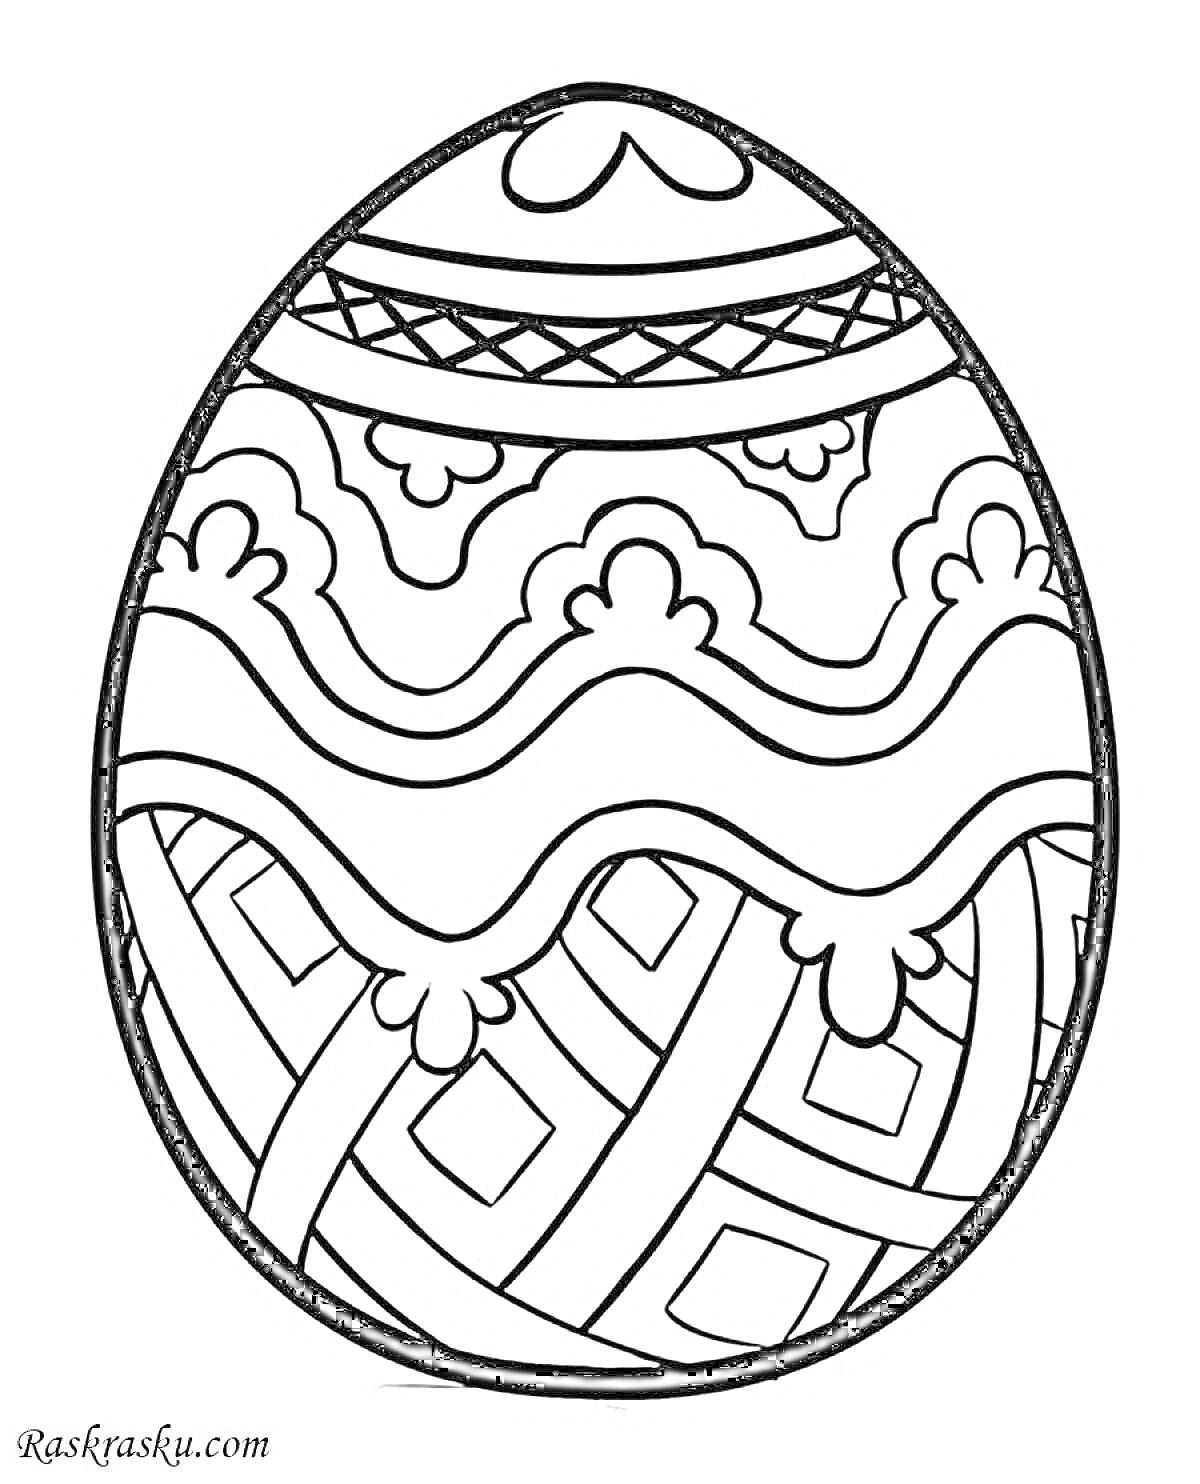 Раскраска Пасхальное яйцо с узорами в виде лент, волн и геометрических фигур